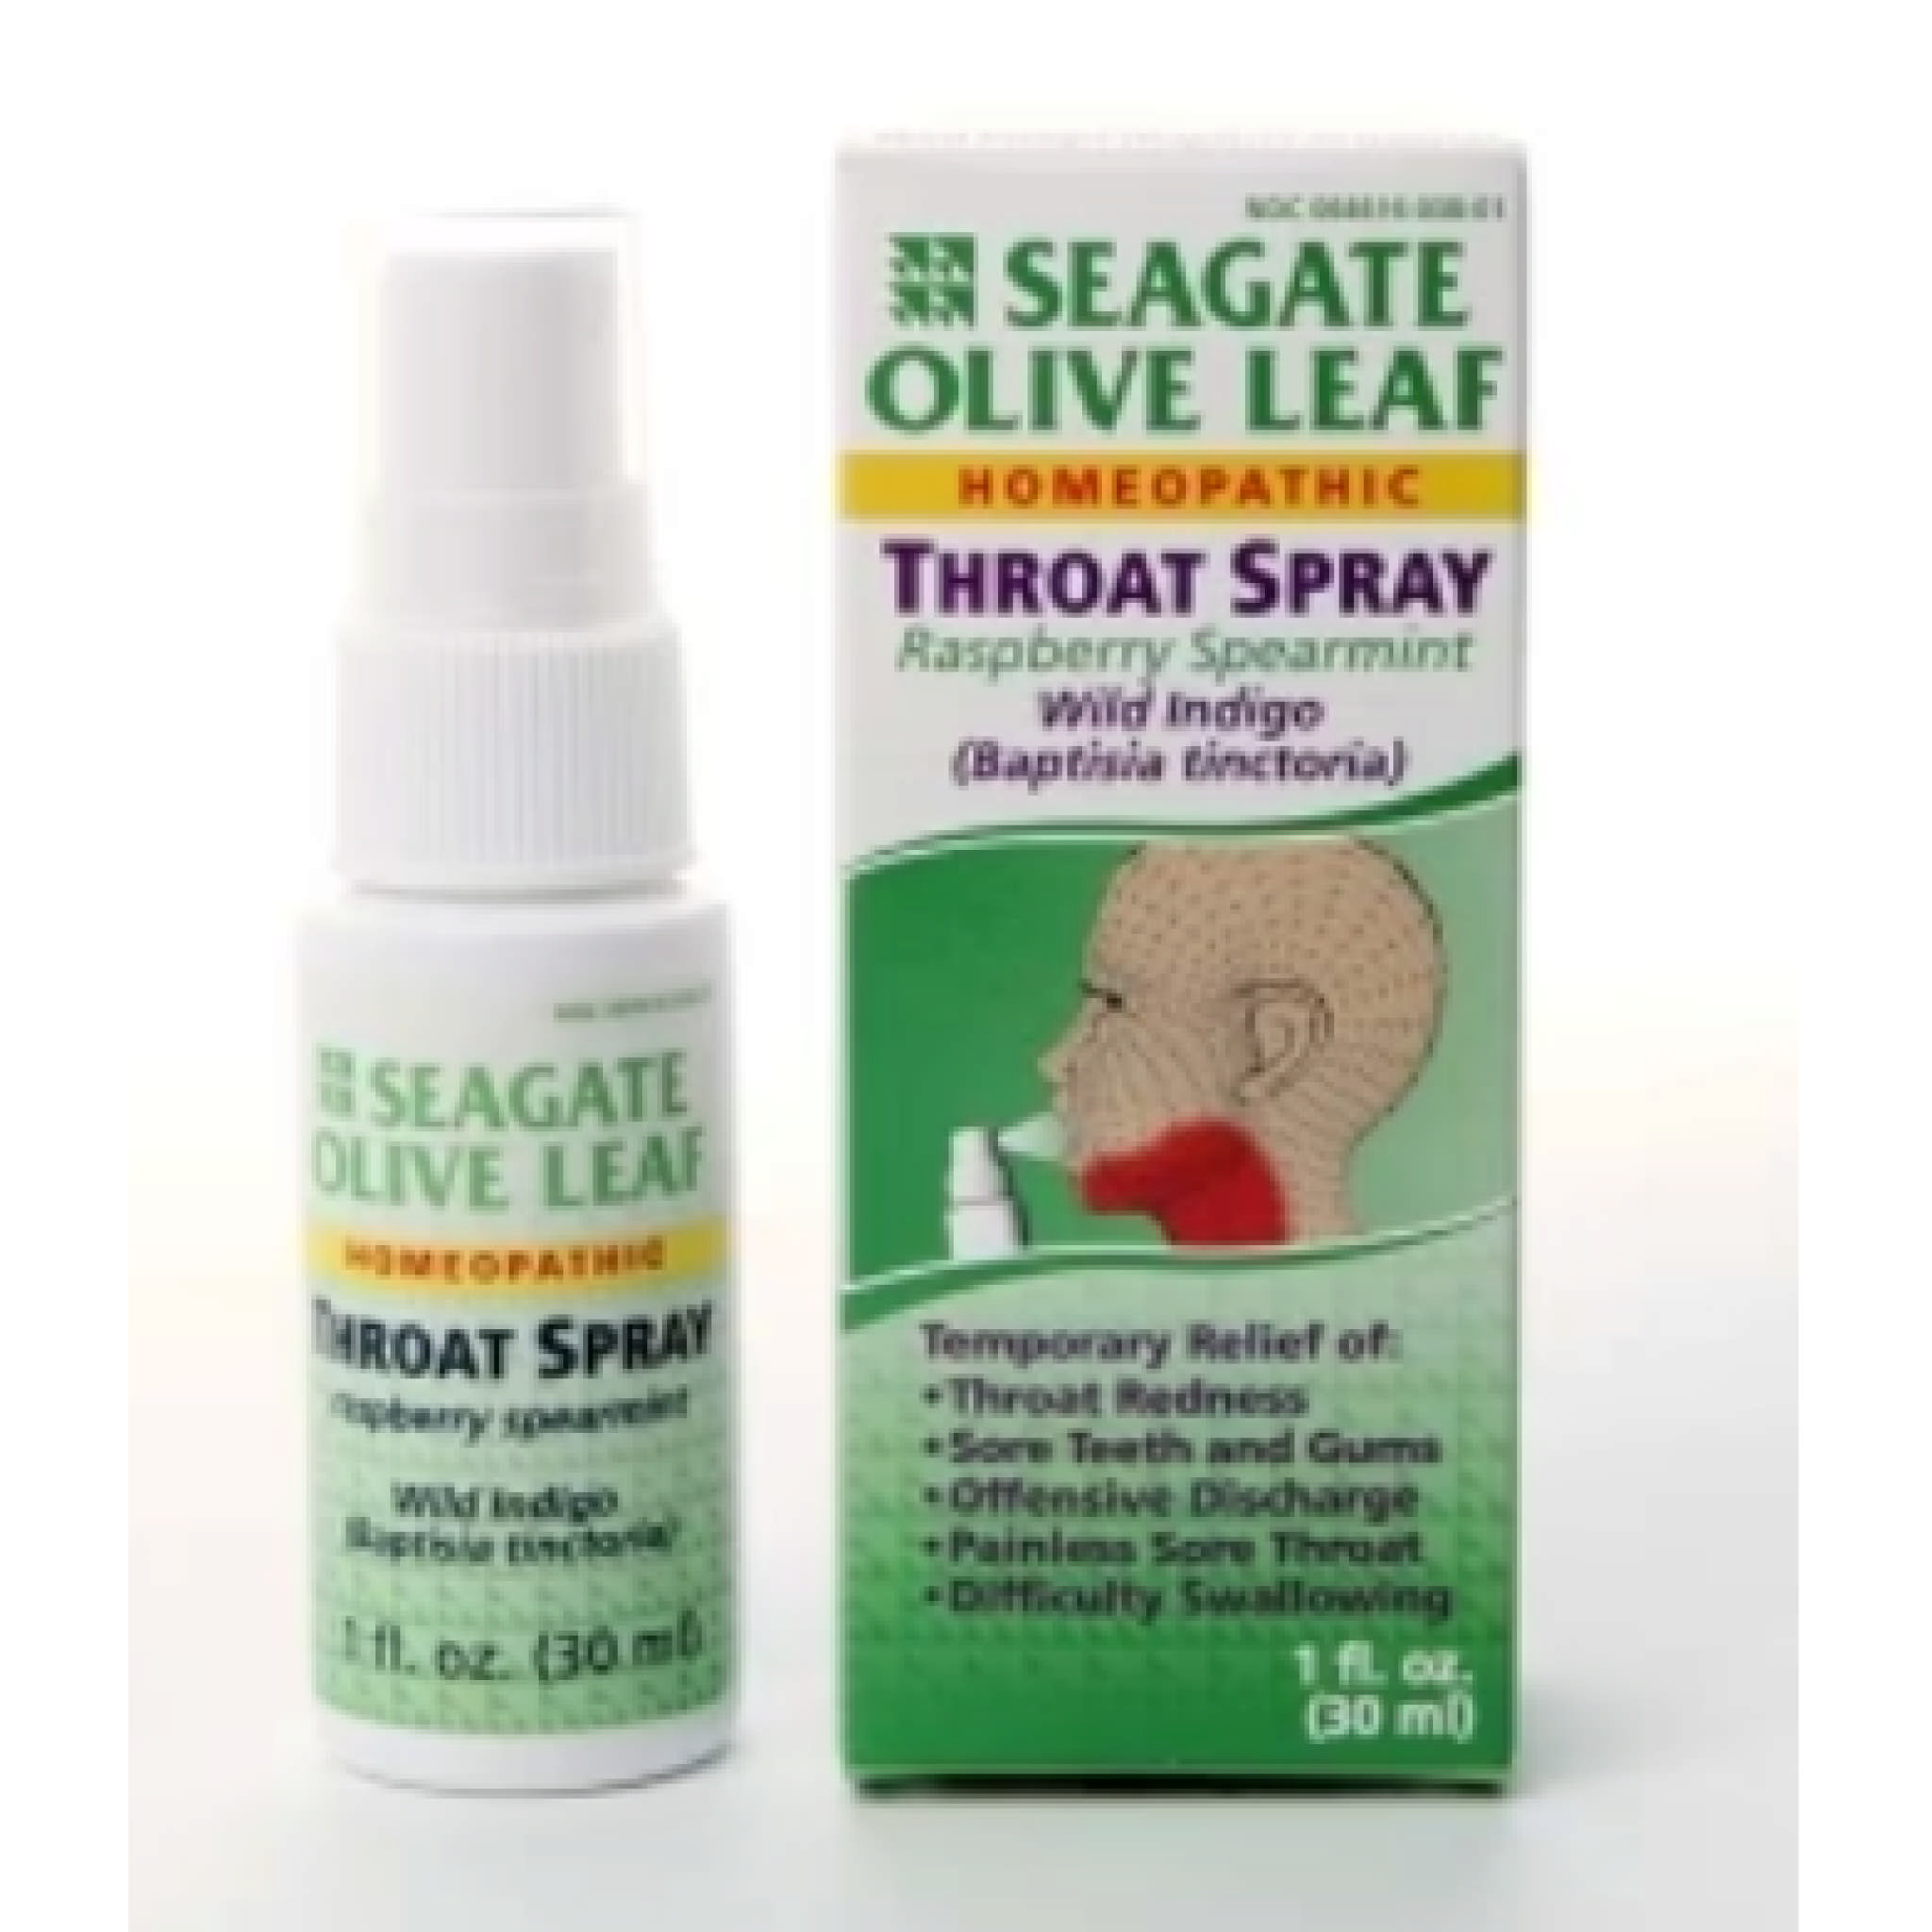 Seagate - Olive Leaf Throat Spray Rasp